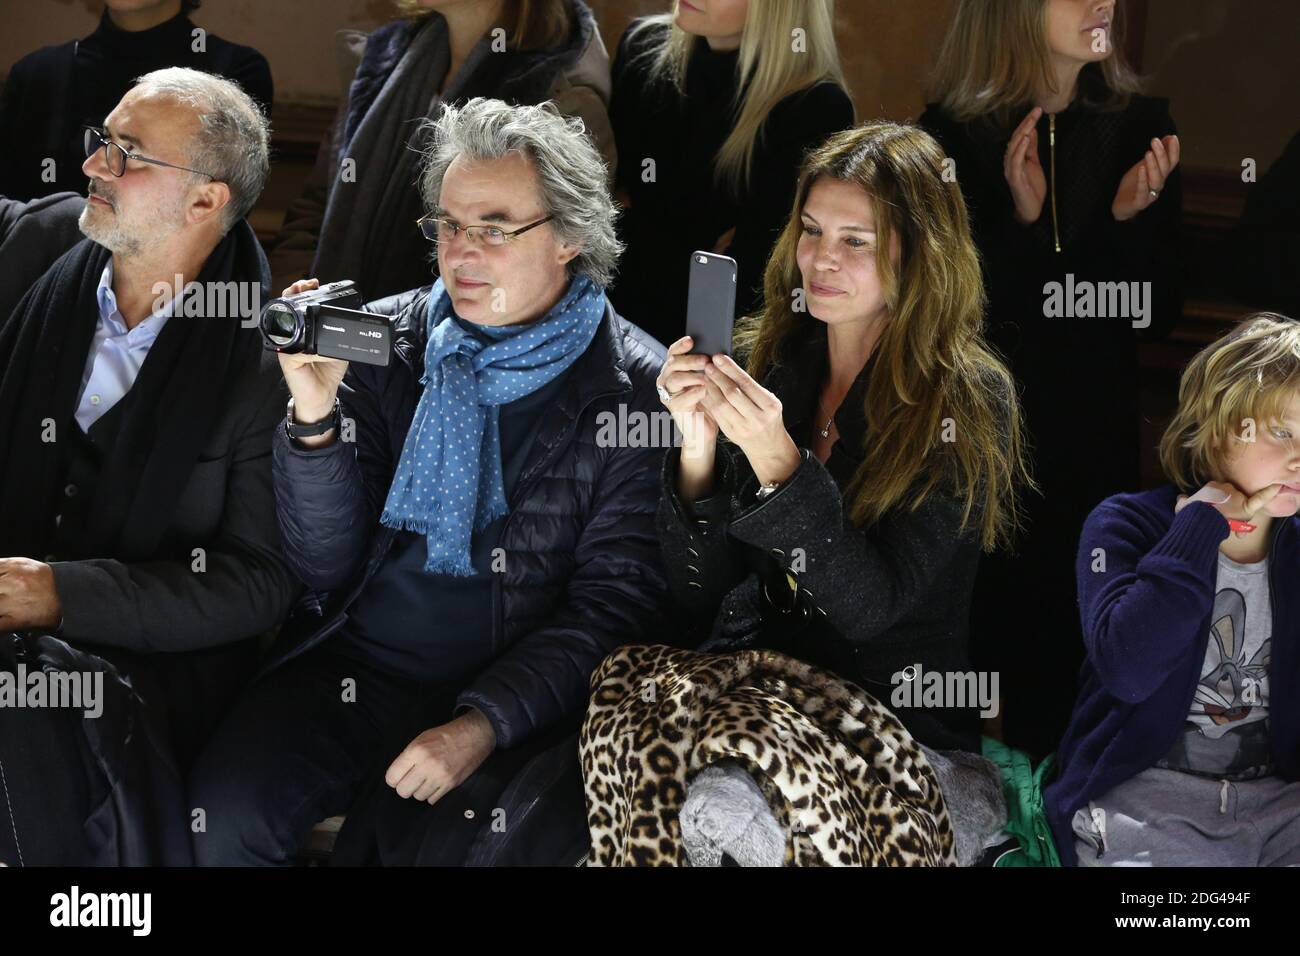 Jean-Christophe Grange e sua moglie hanno partecipato alla mostra Bonpoint Collection Winter 2017 come parte della settimana della moda di Parigi il 25 gennaio 2017 a Parigi, Francia. Foto di Jerome Domine/ABACAPRESS.COM Foto Stock